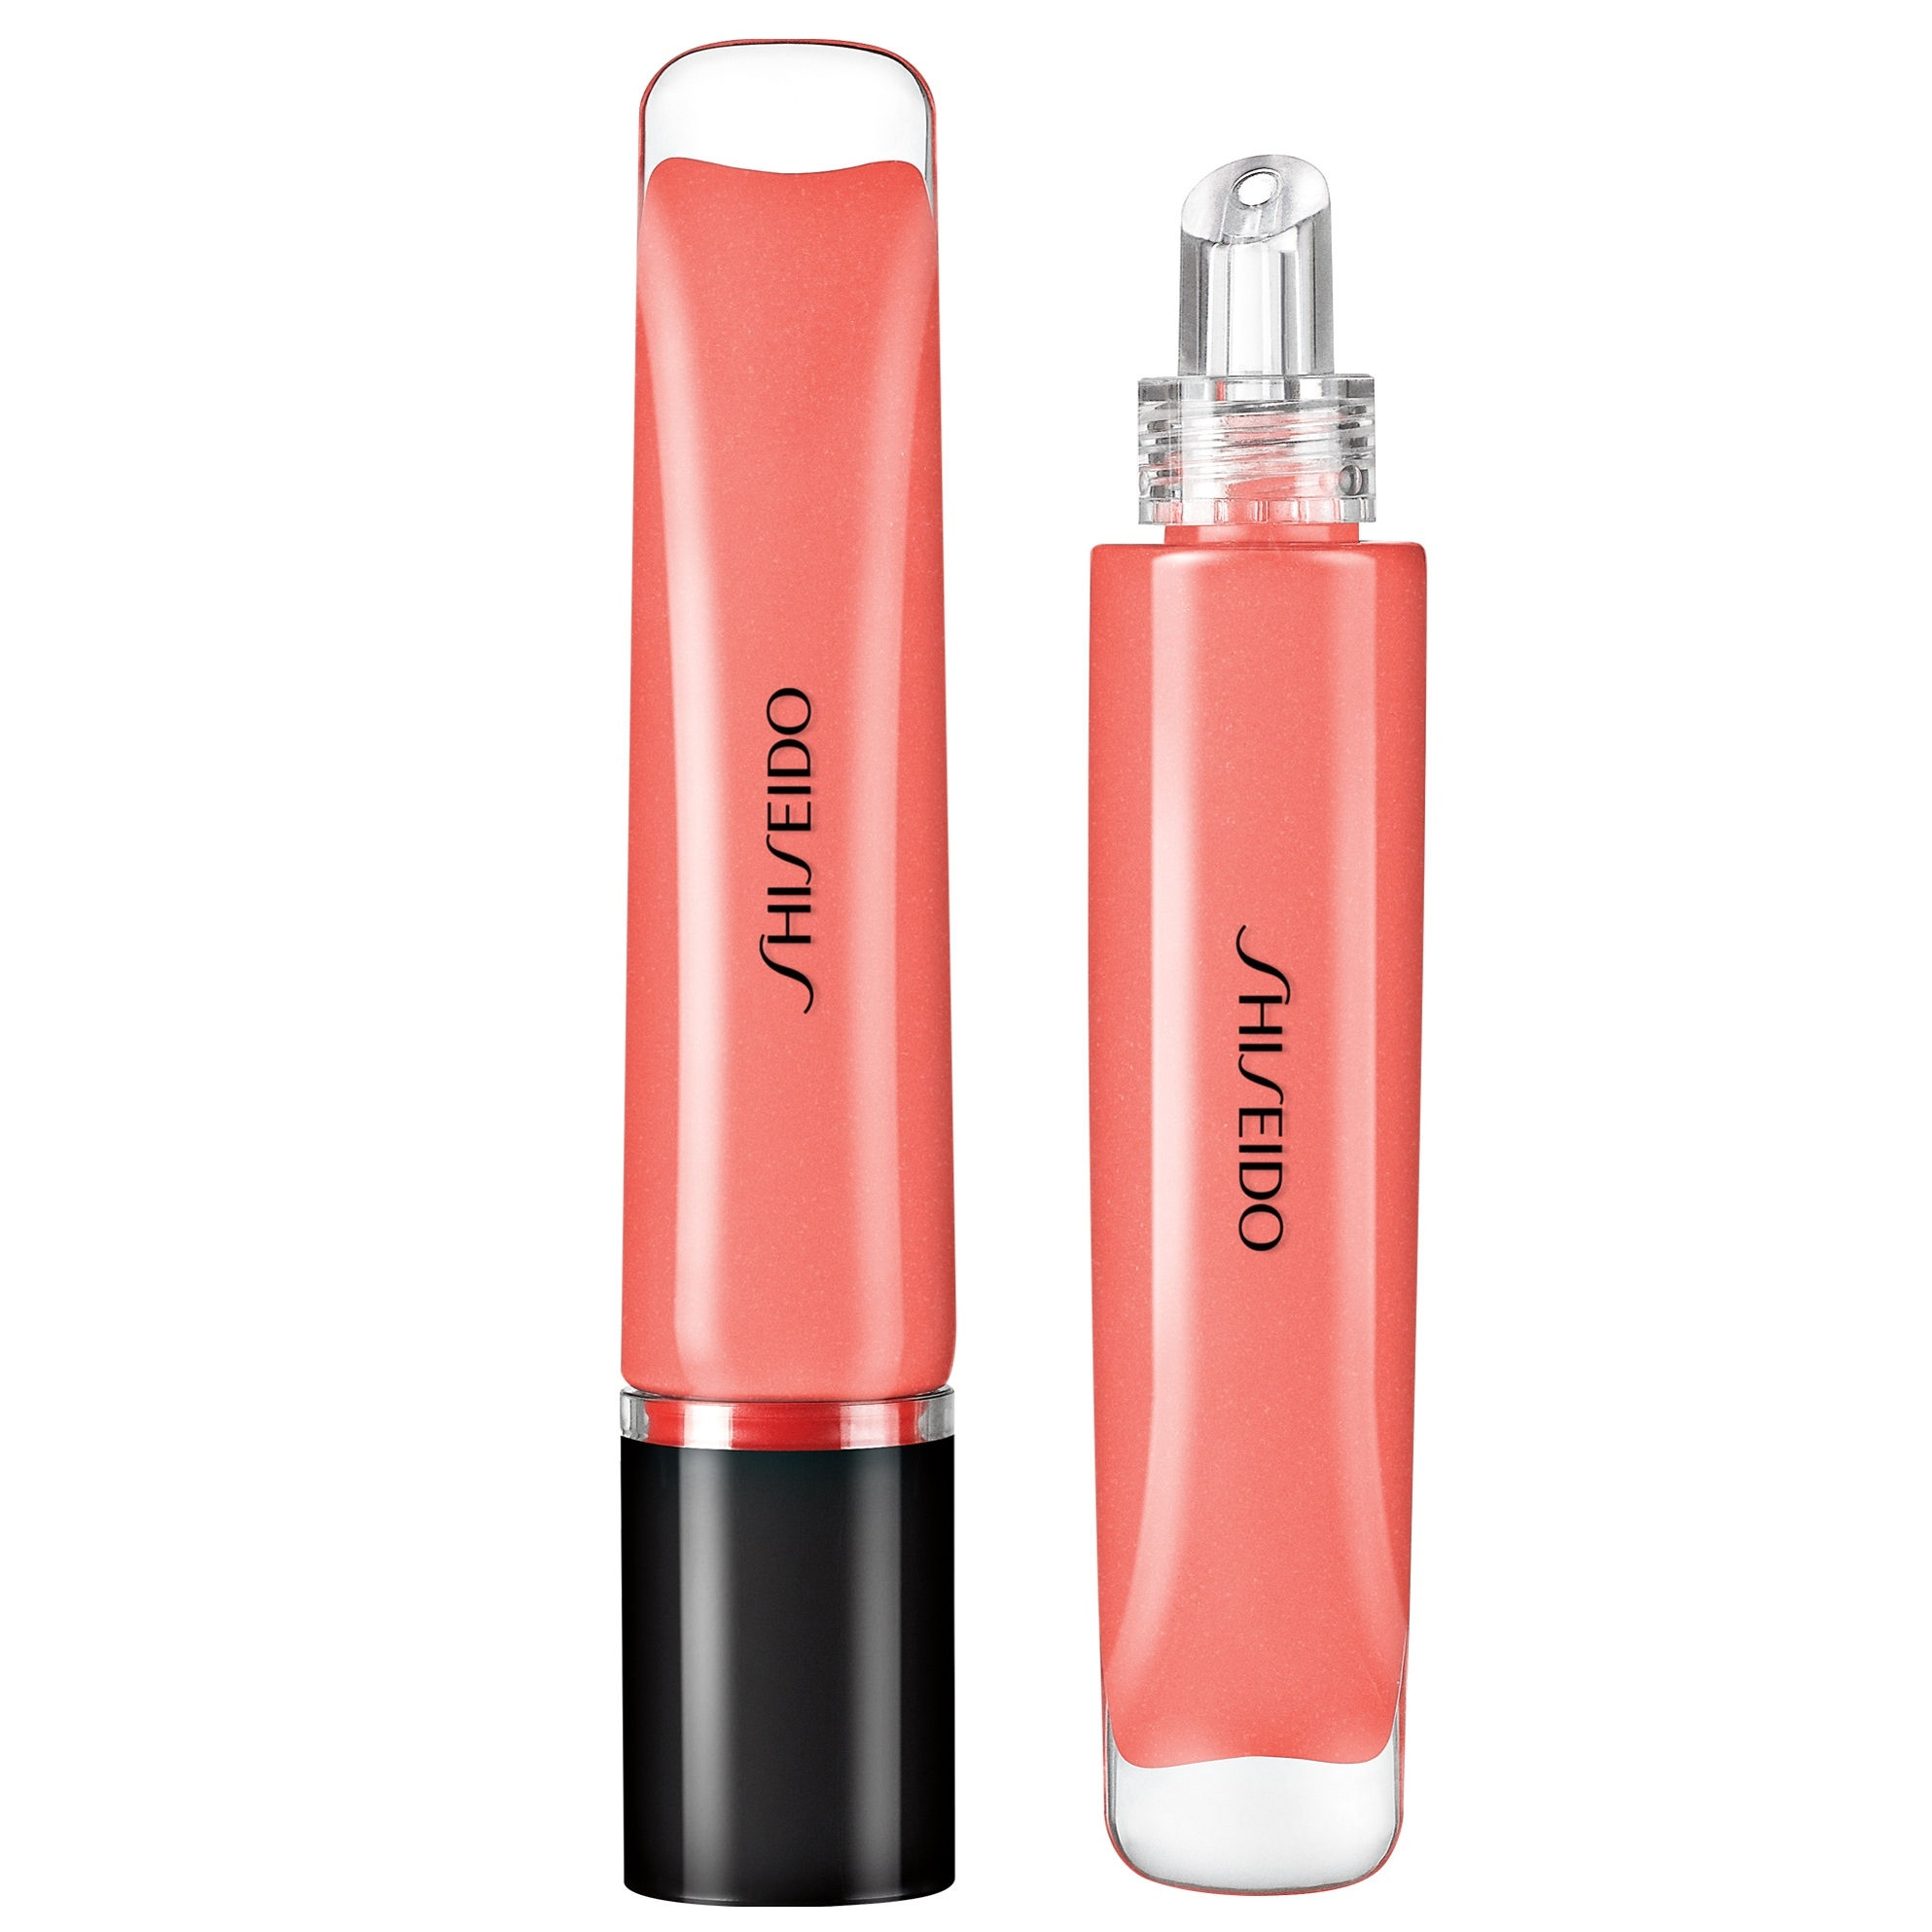 Shiseido Shimmer Gel Gloss Lipgloss 9 ml